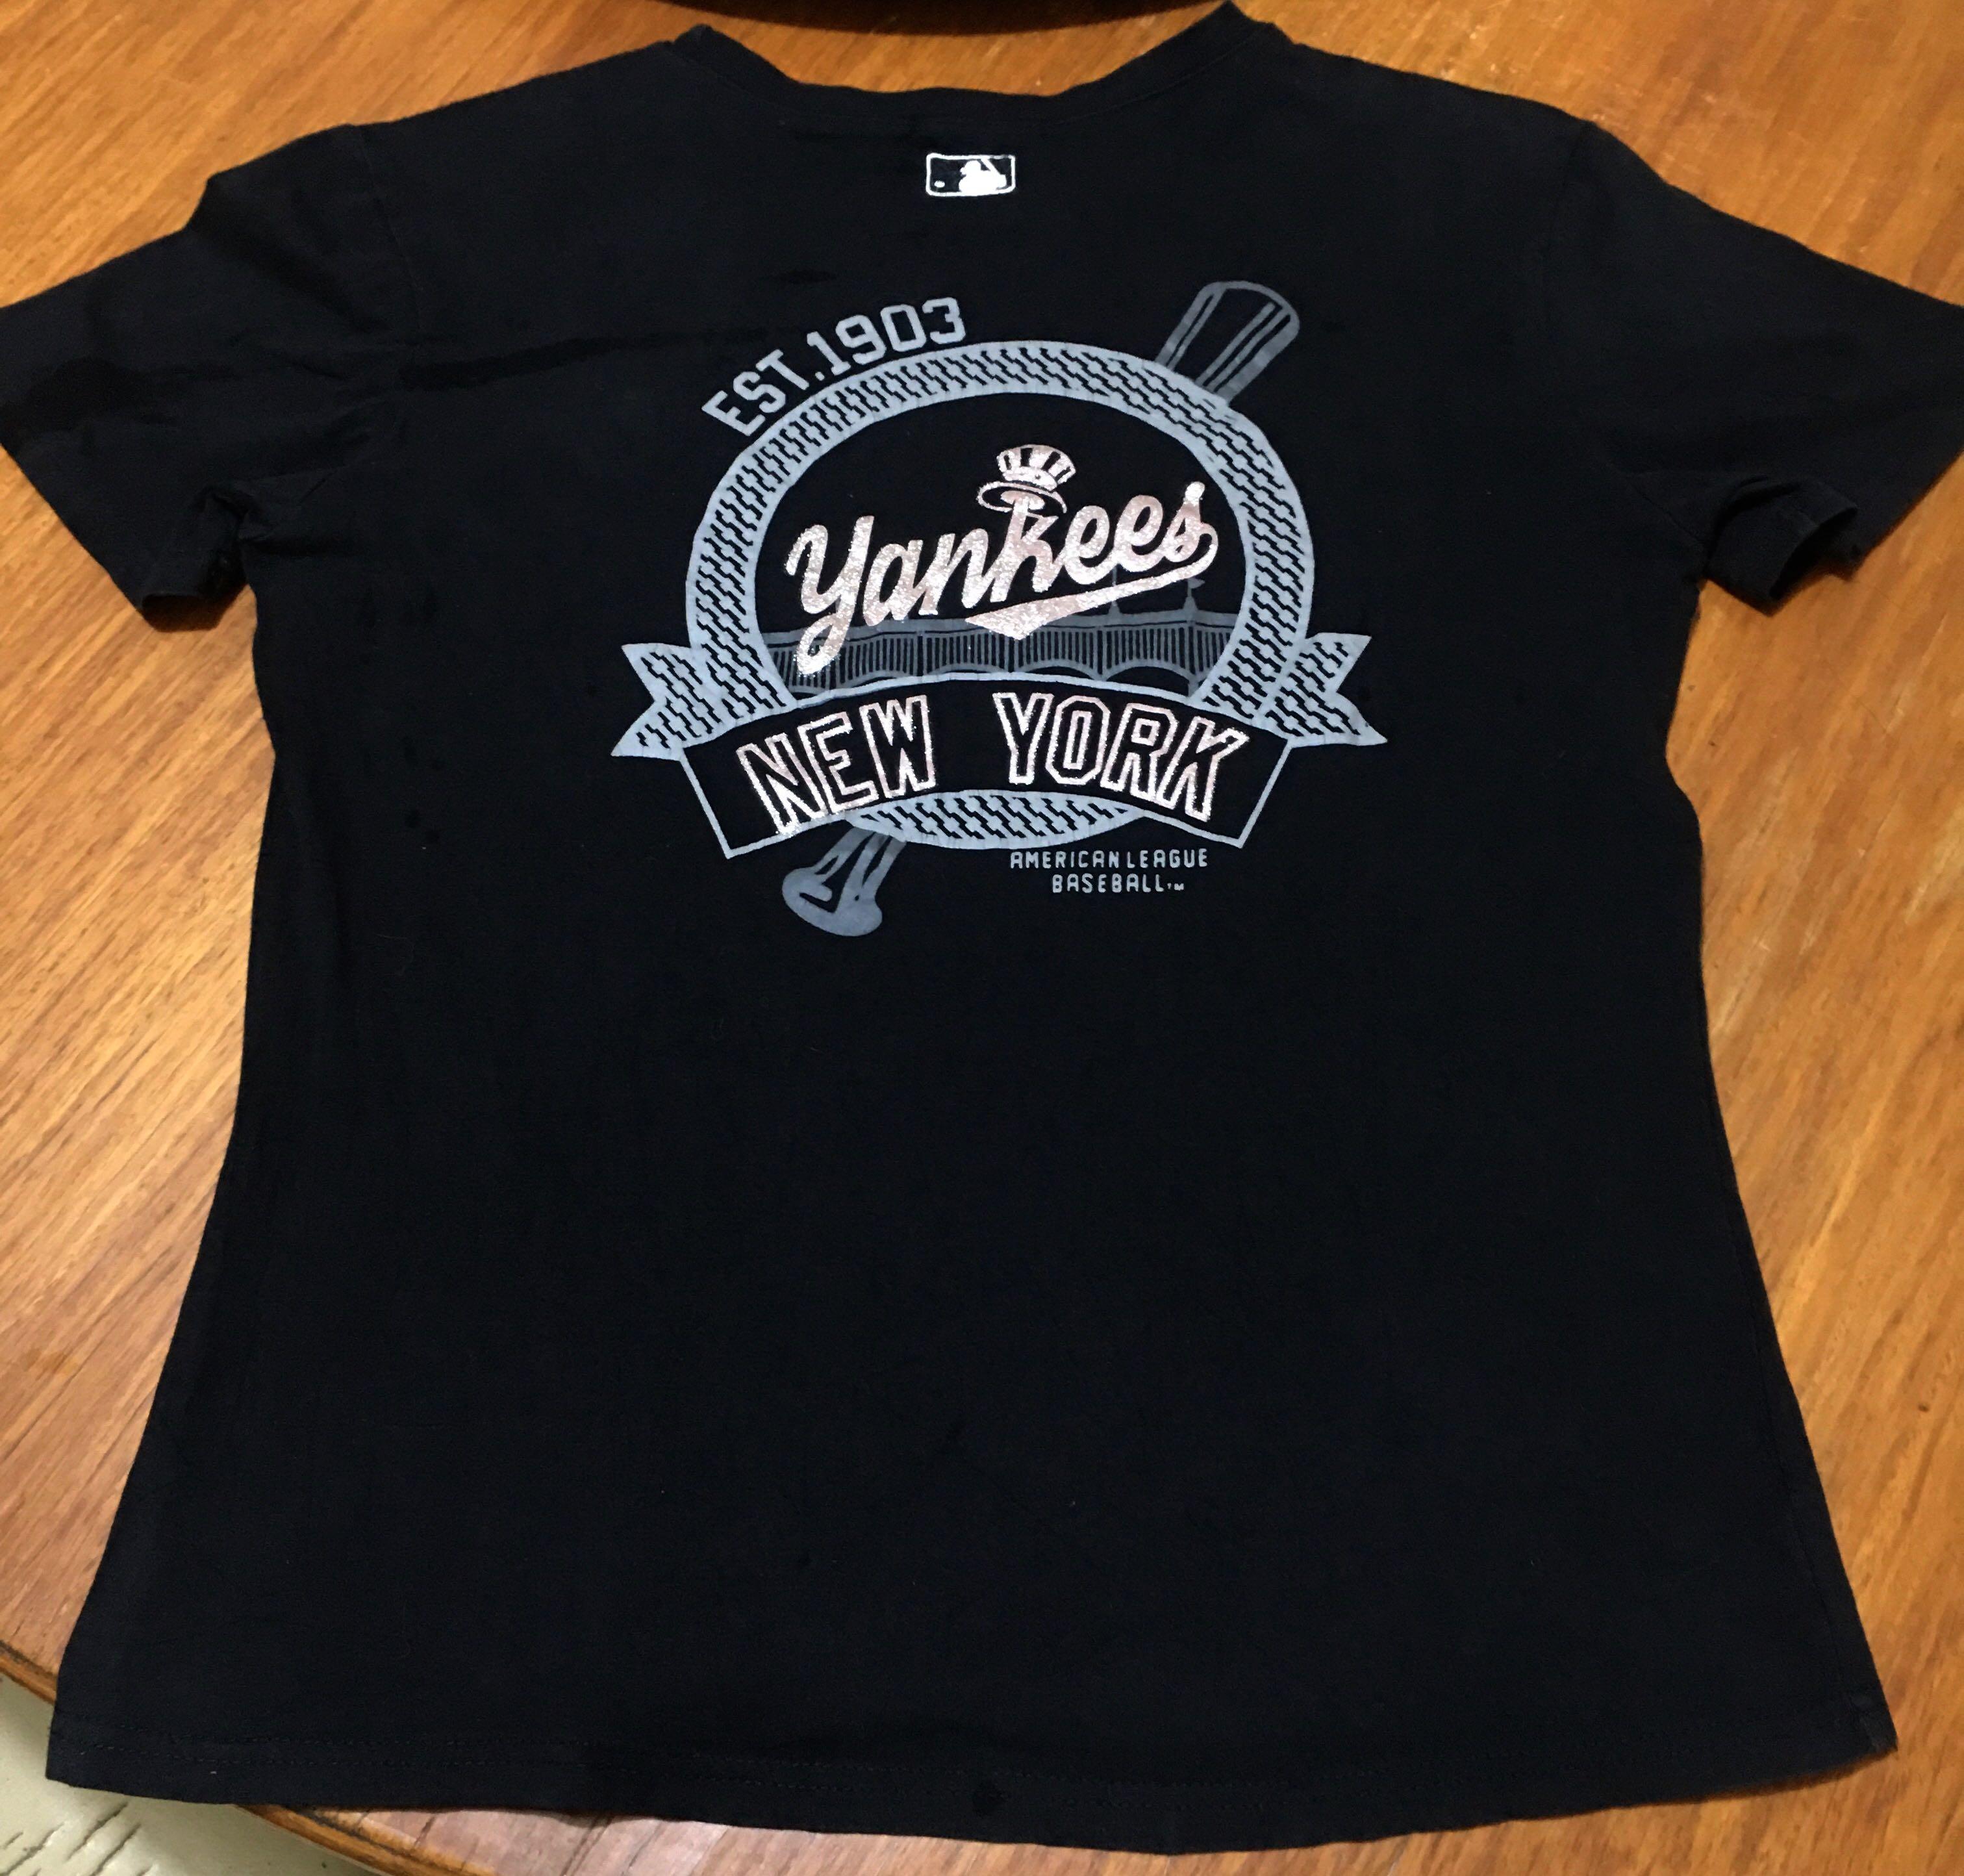 Vintage 90s MLB New York Yankees Shirt, New York Yankees EST 1903 Shirt  KV11343 